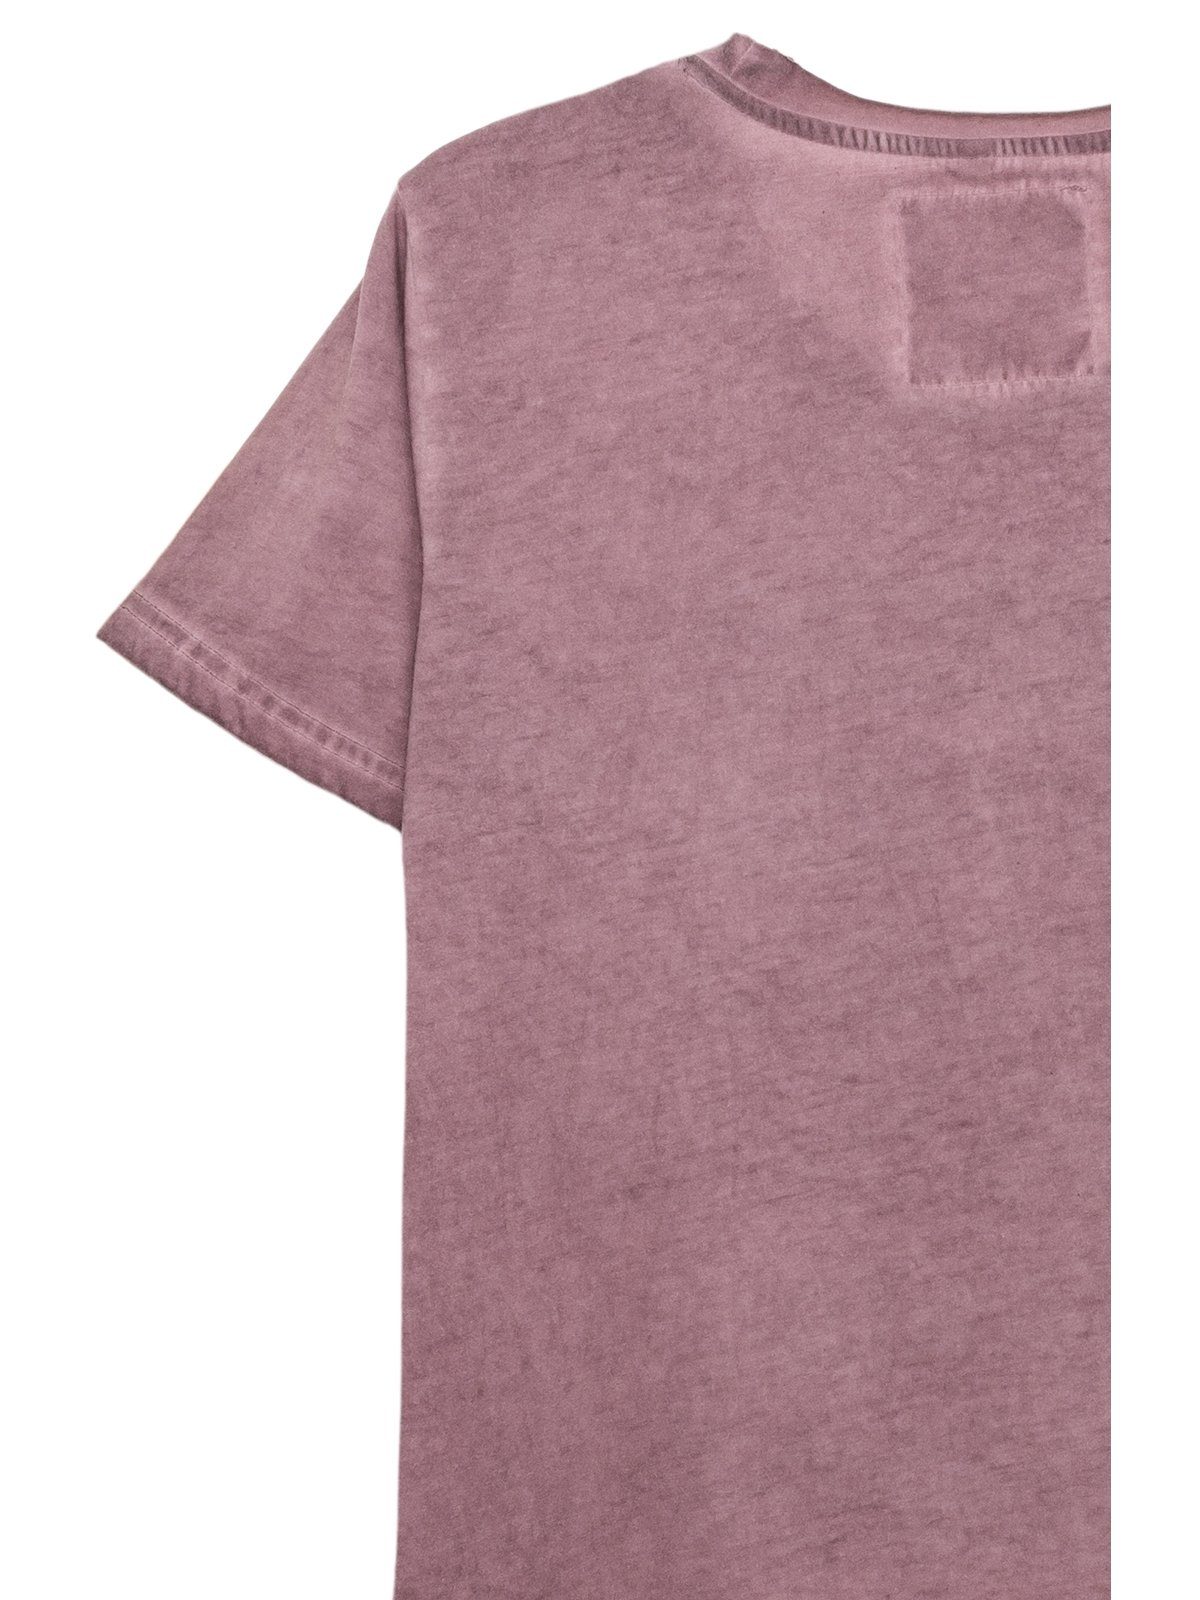 MarJo lavendel Trachtenshirt LUKE T-Shirt